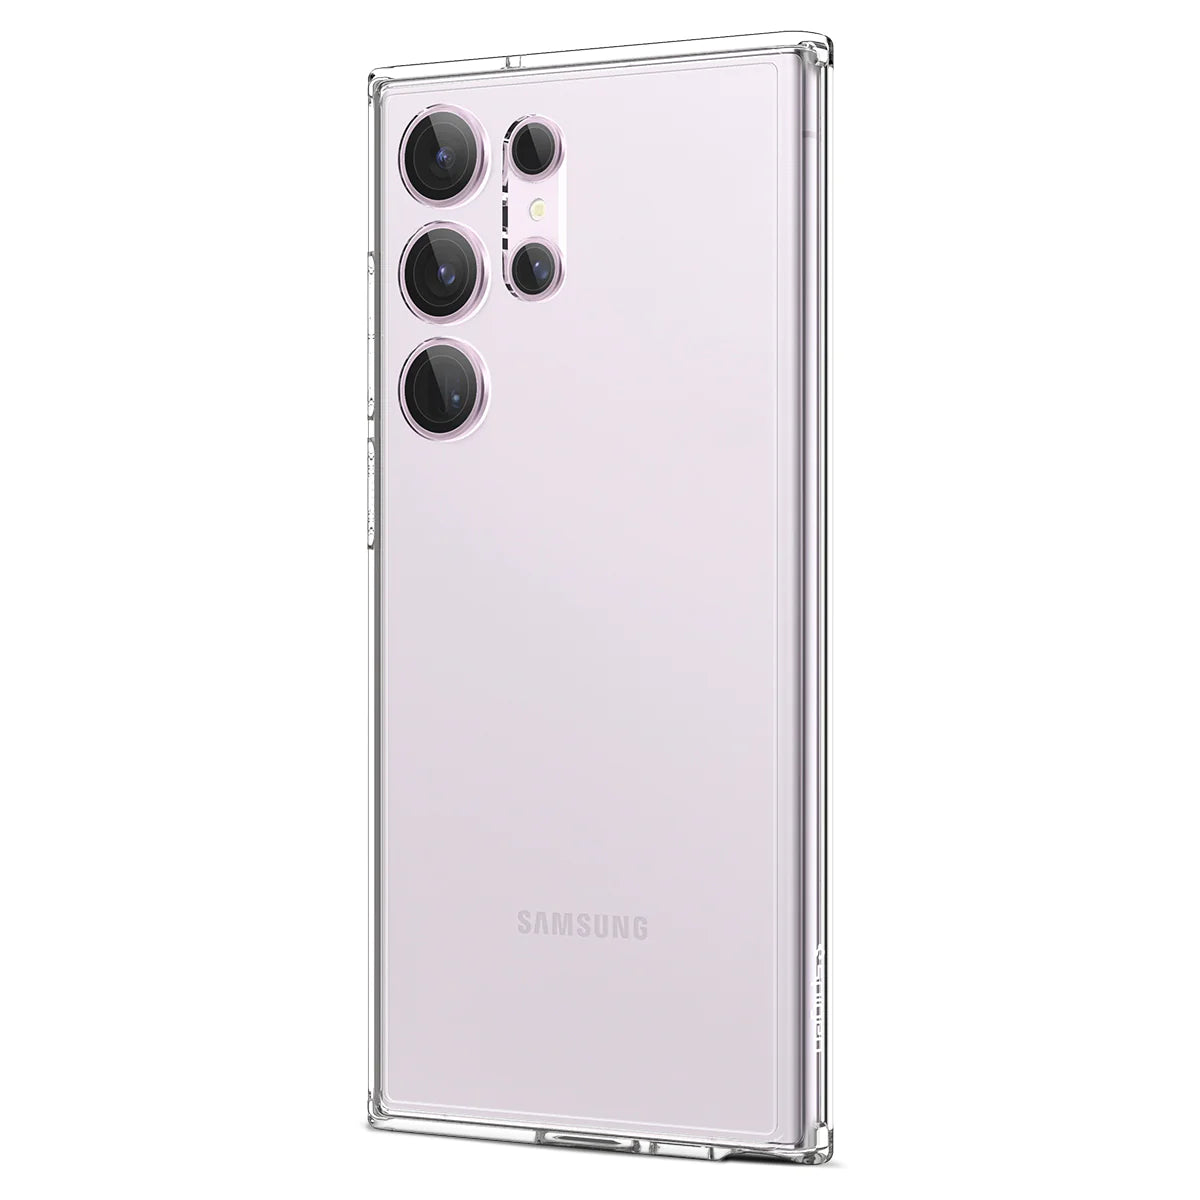 واقي عدسة Spigen EZ Fit Optik Pro لهاتف Samsung Galaxy S23 Ultra